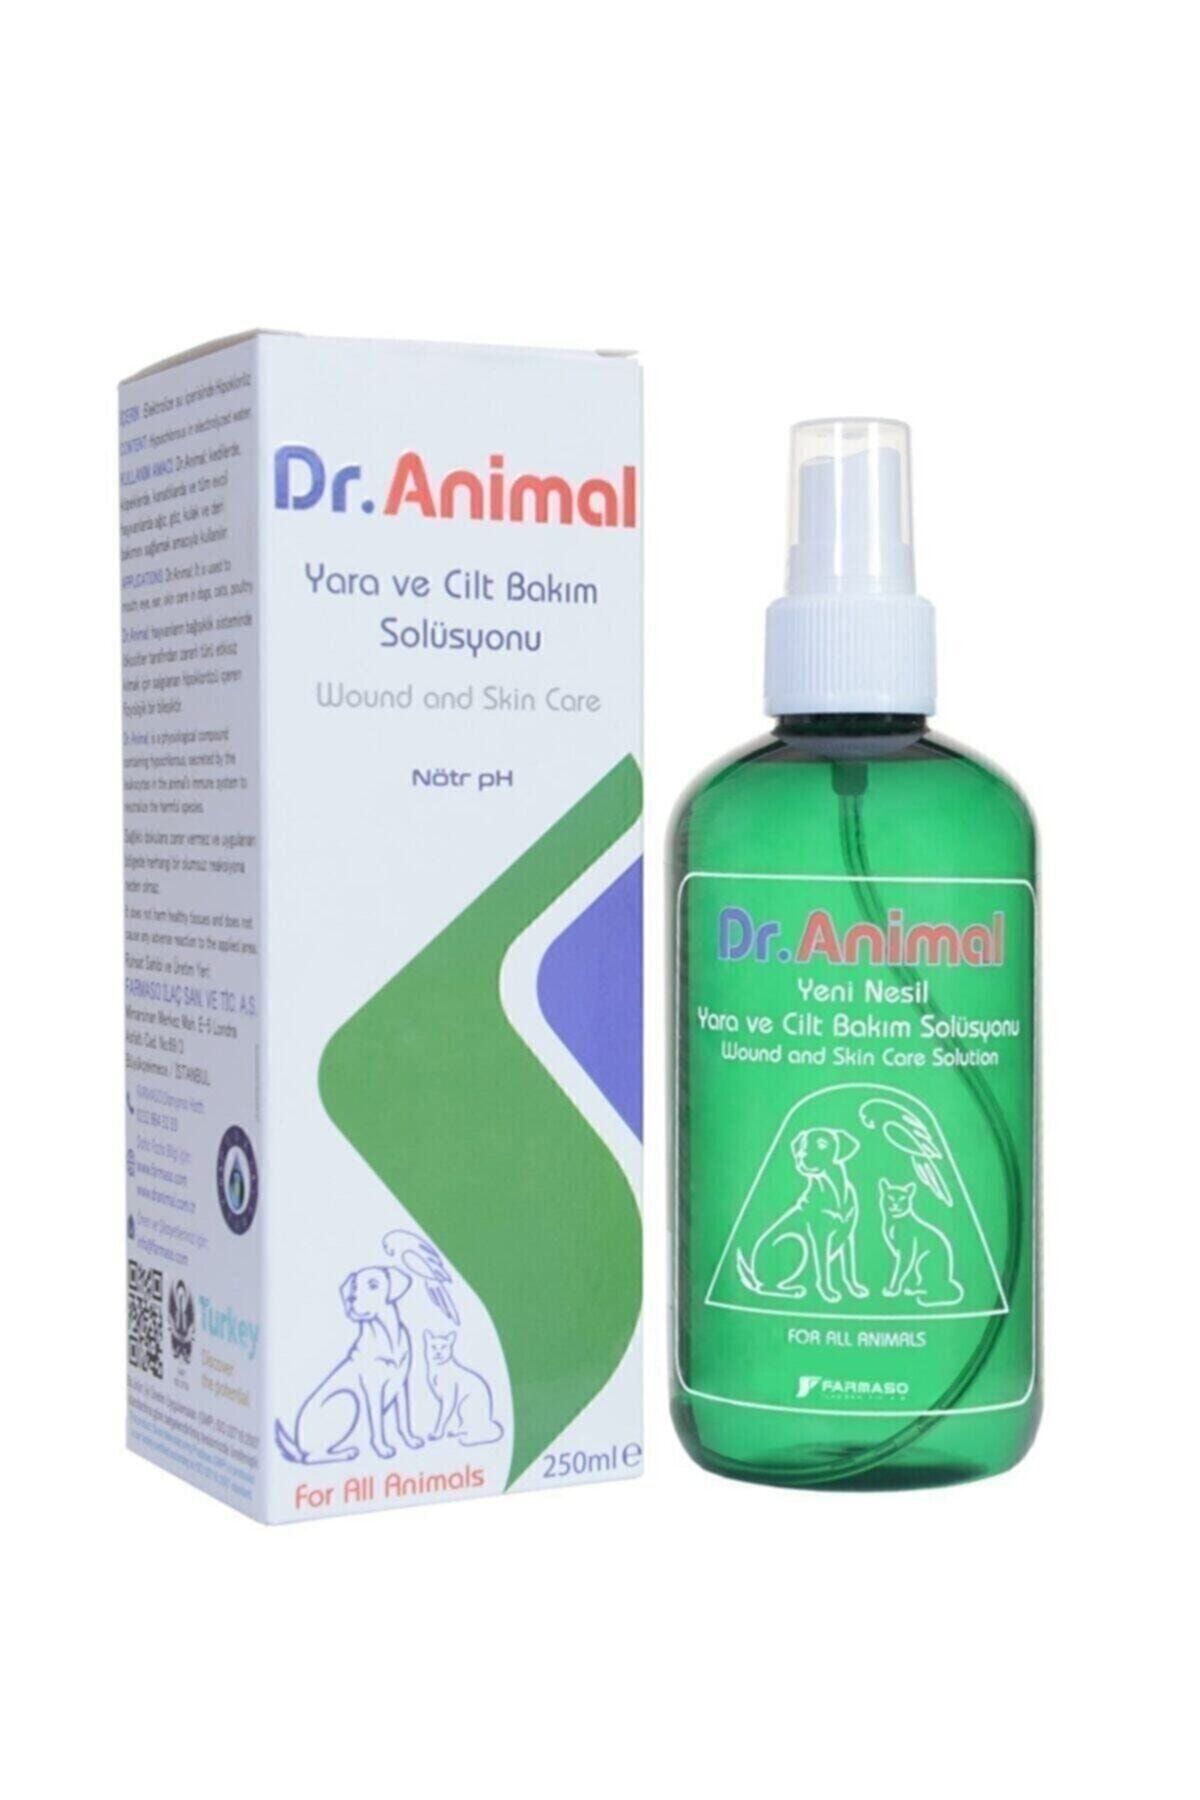 Dr. Animal Dr.animal Yara Ve Cilt Bakım Solisyonu Nötr Ph 250ml